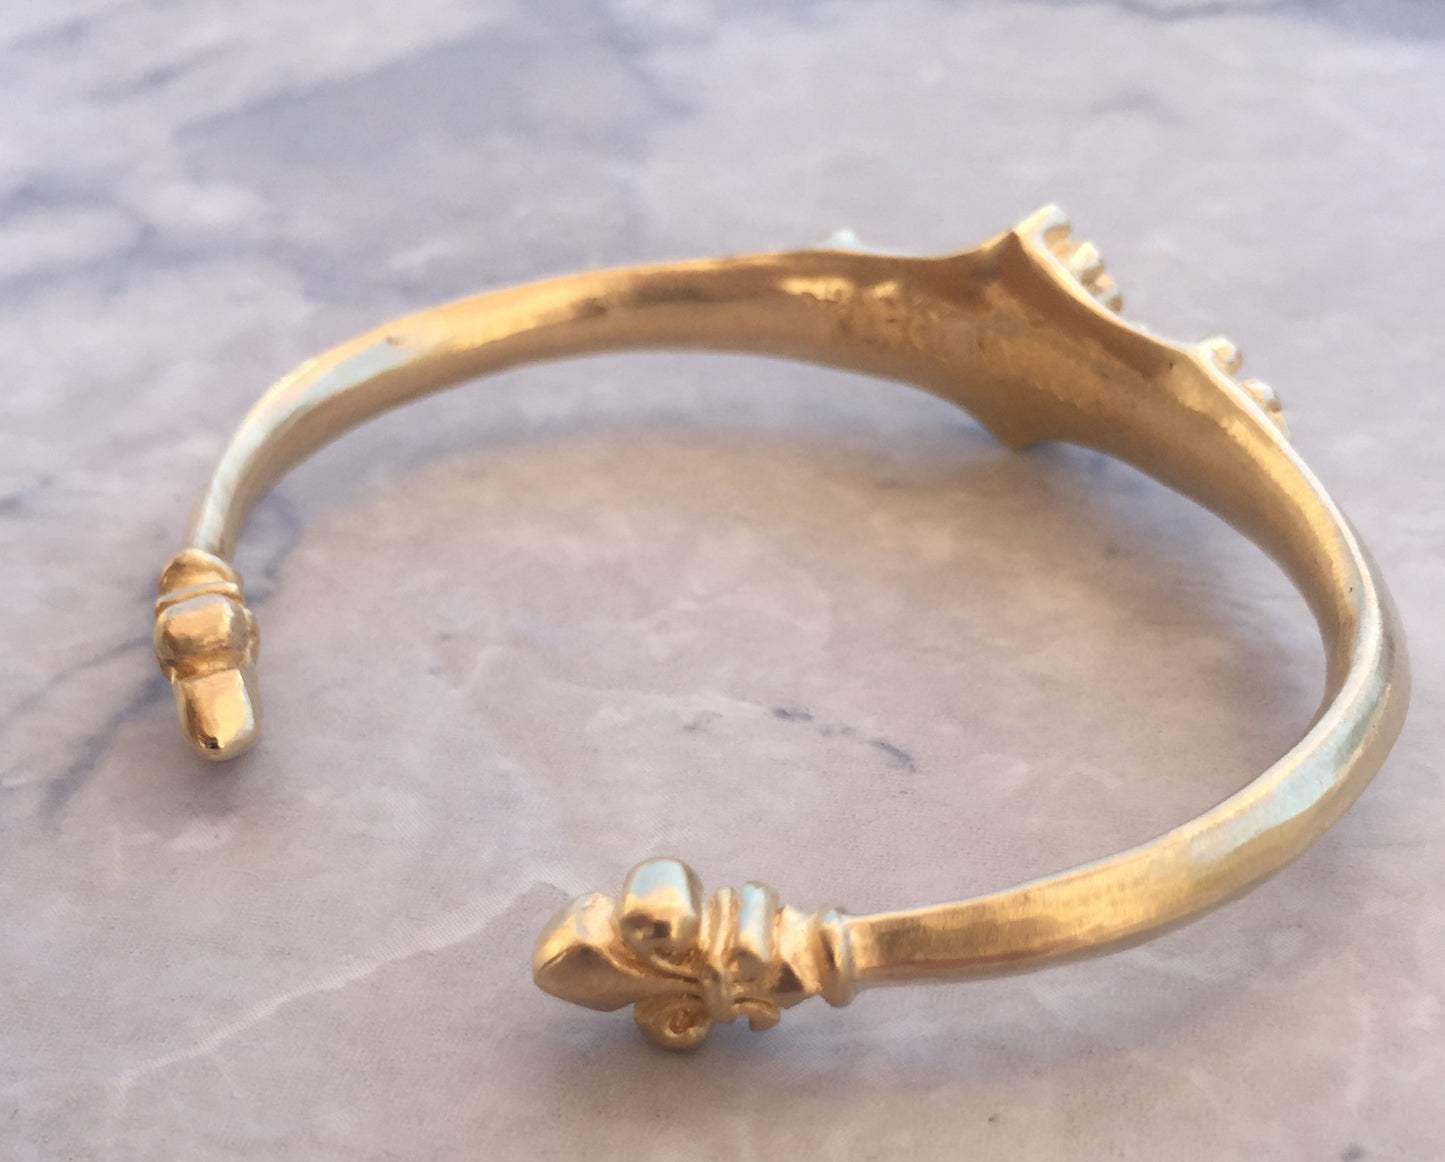 Bracelet - Gold Renaissance Fleur de Lis cuff